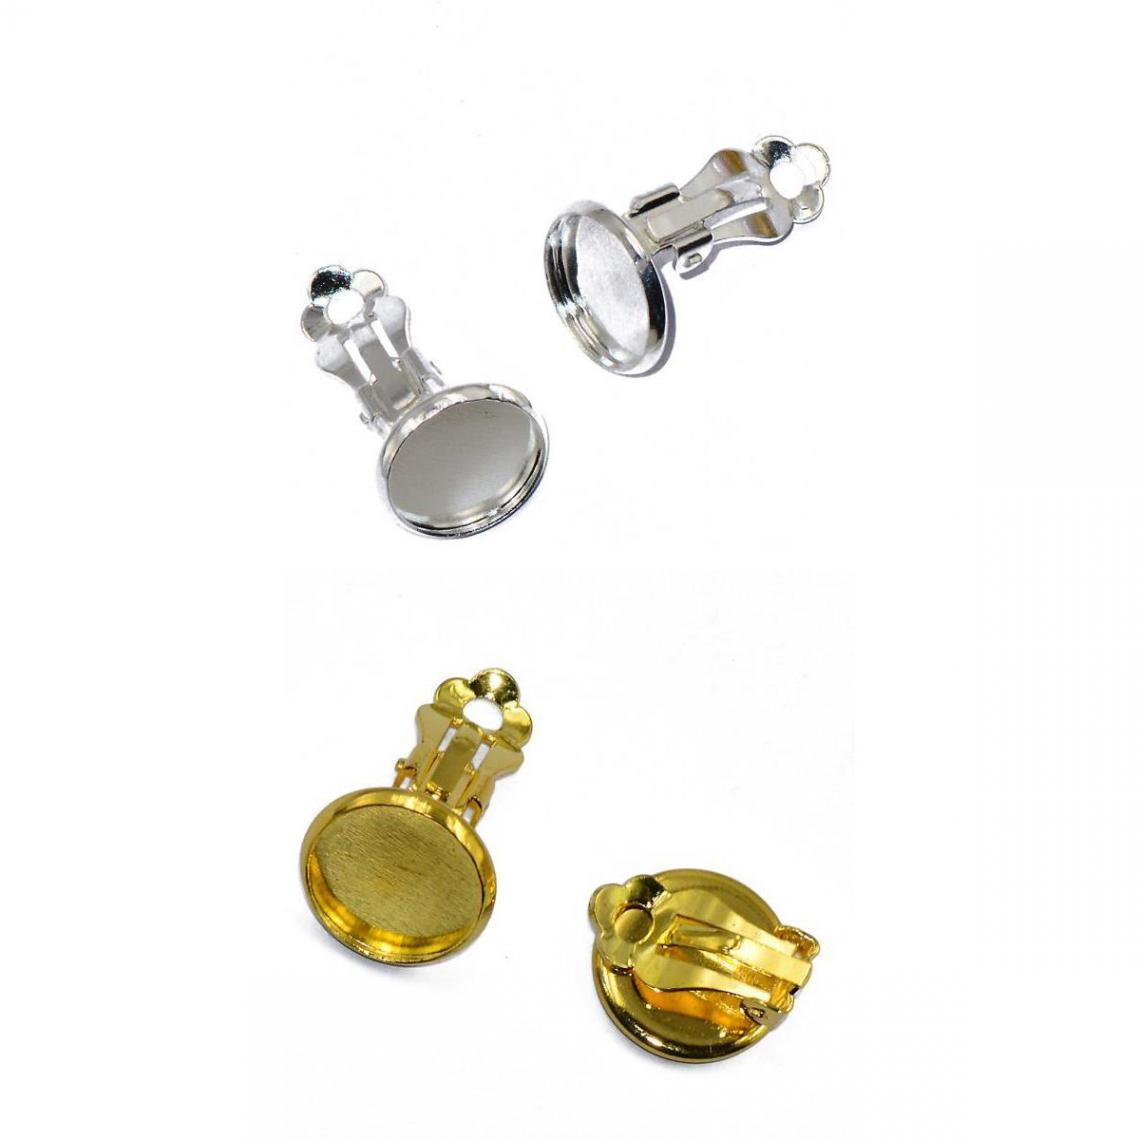 marque generique - 24 Pcs Clip On Boucles D'oreilles Findings Fit 12mm Cabochon Settings Silver & Gold - Perles